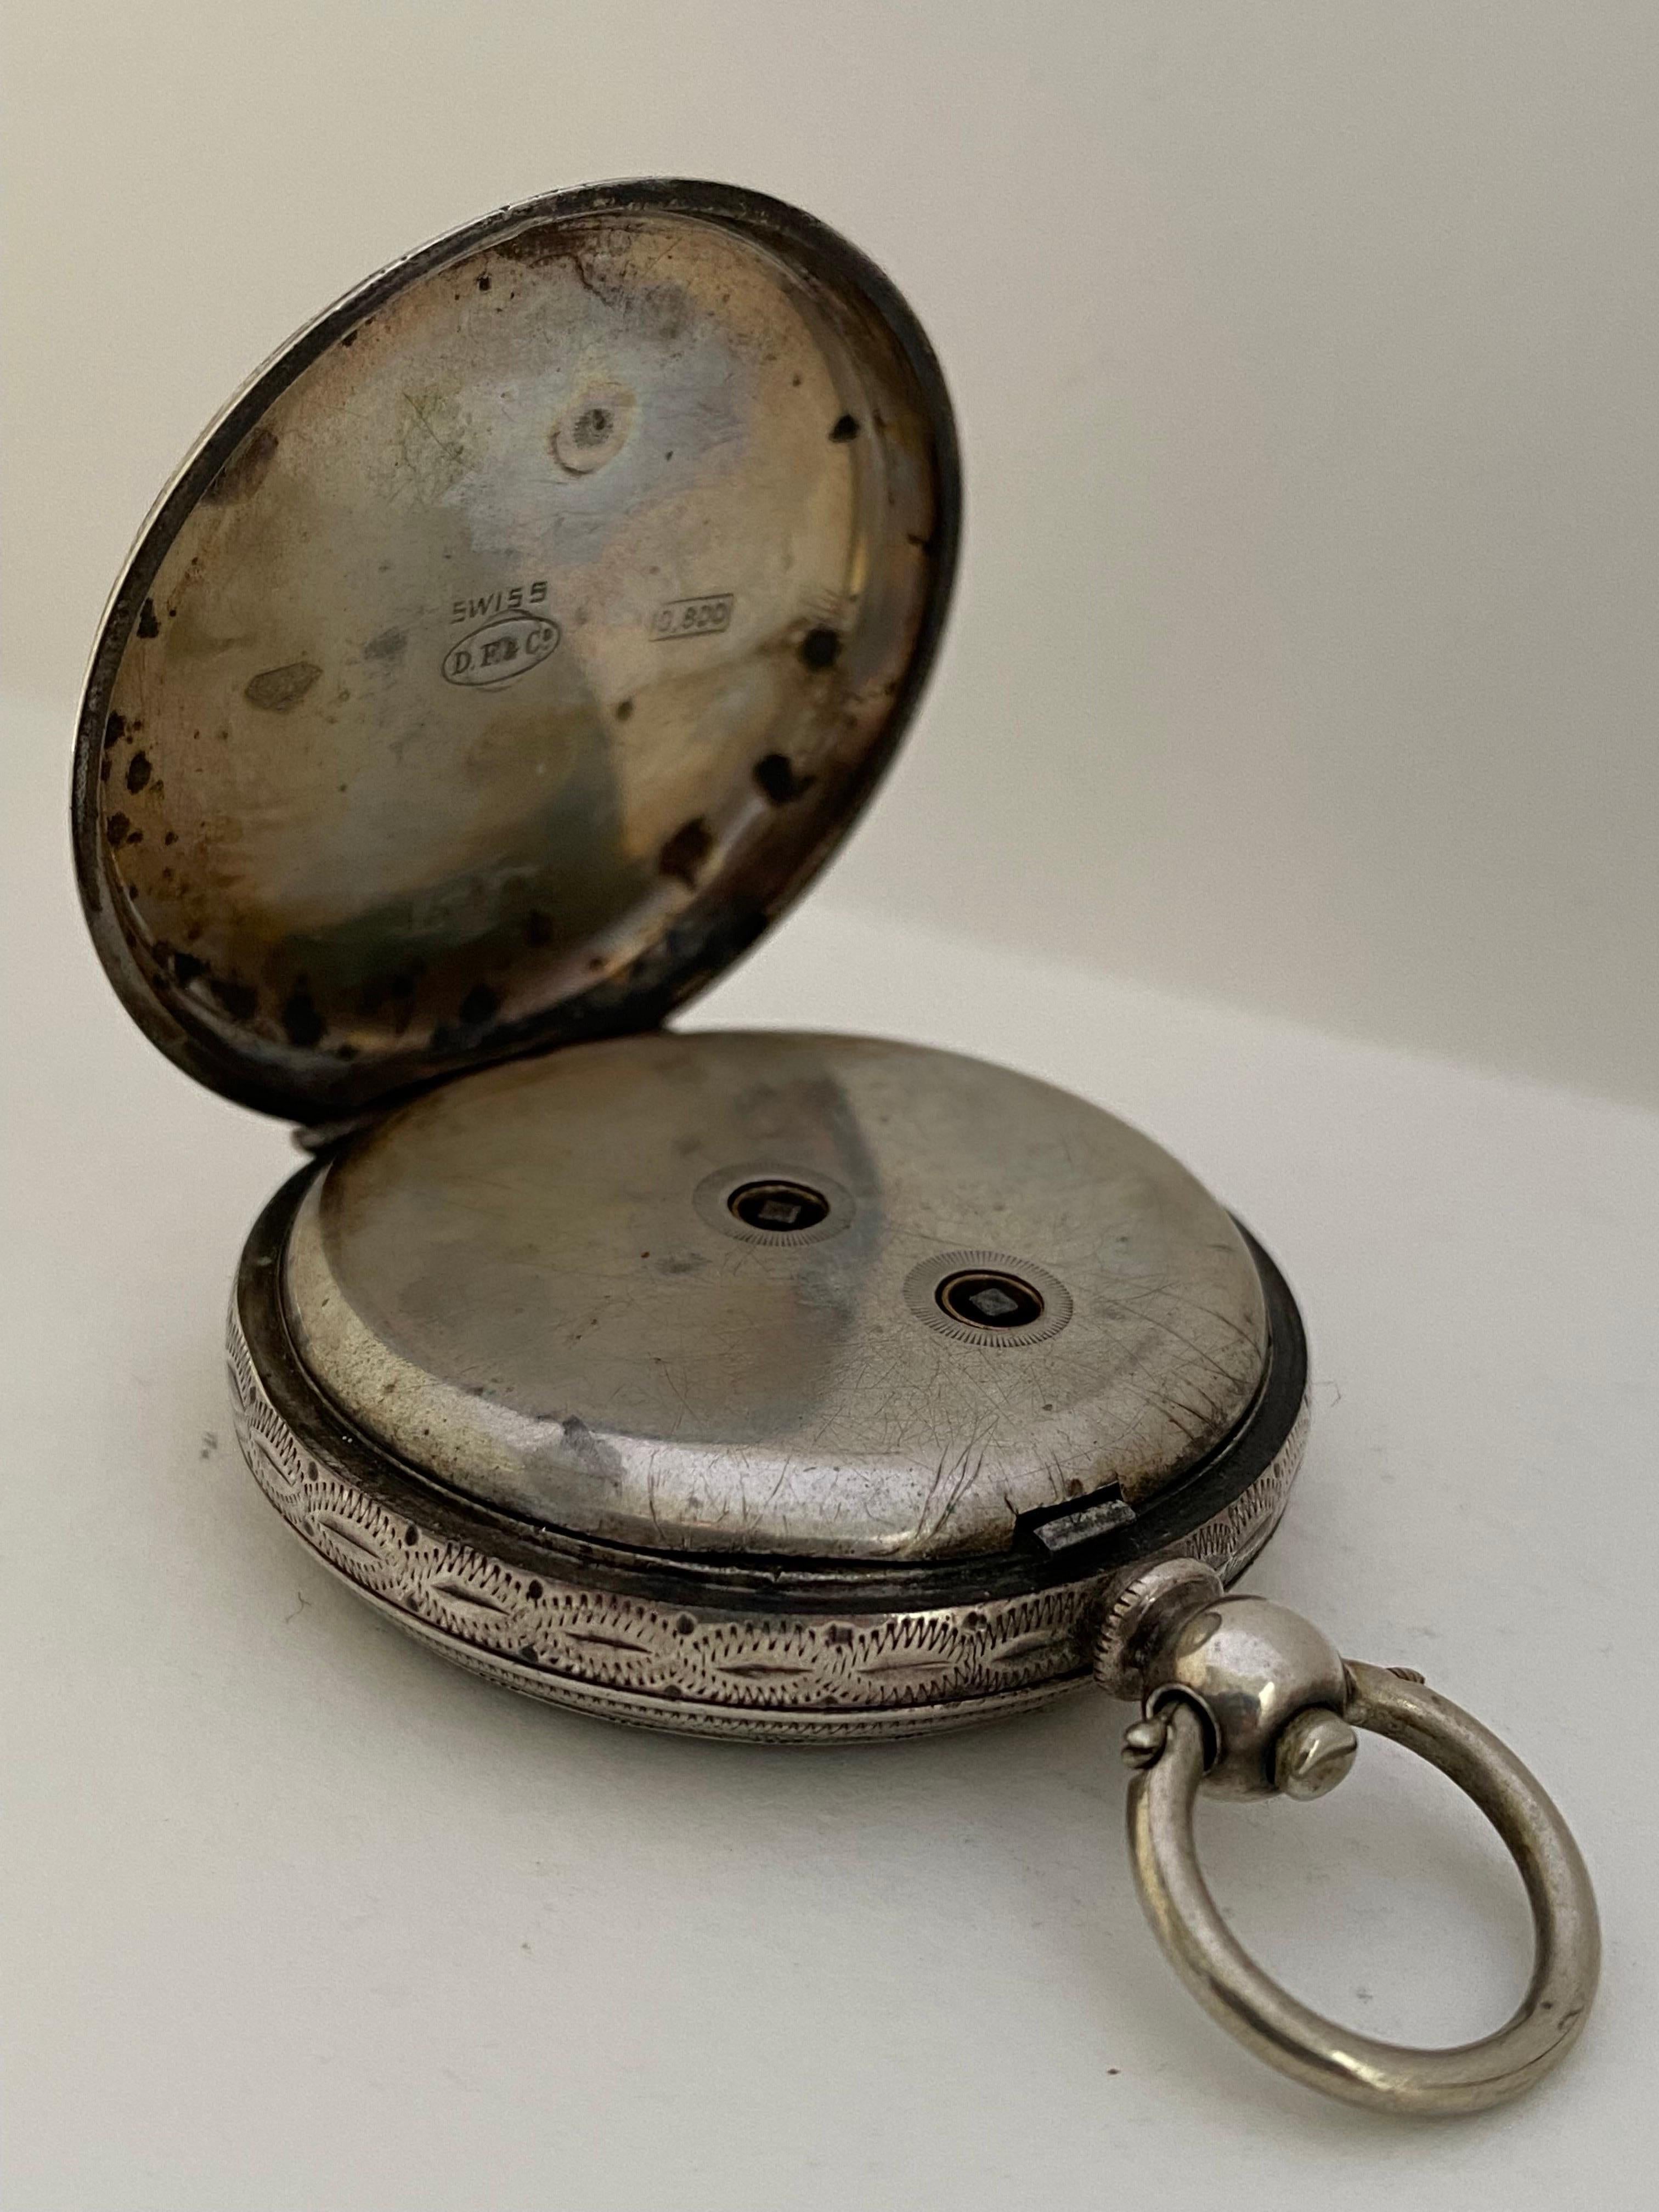 antique pocket watch 1800s